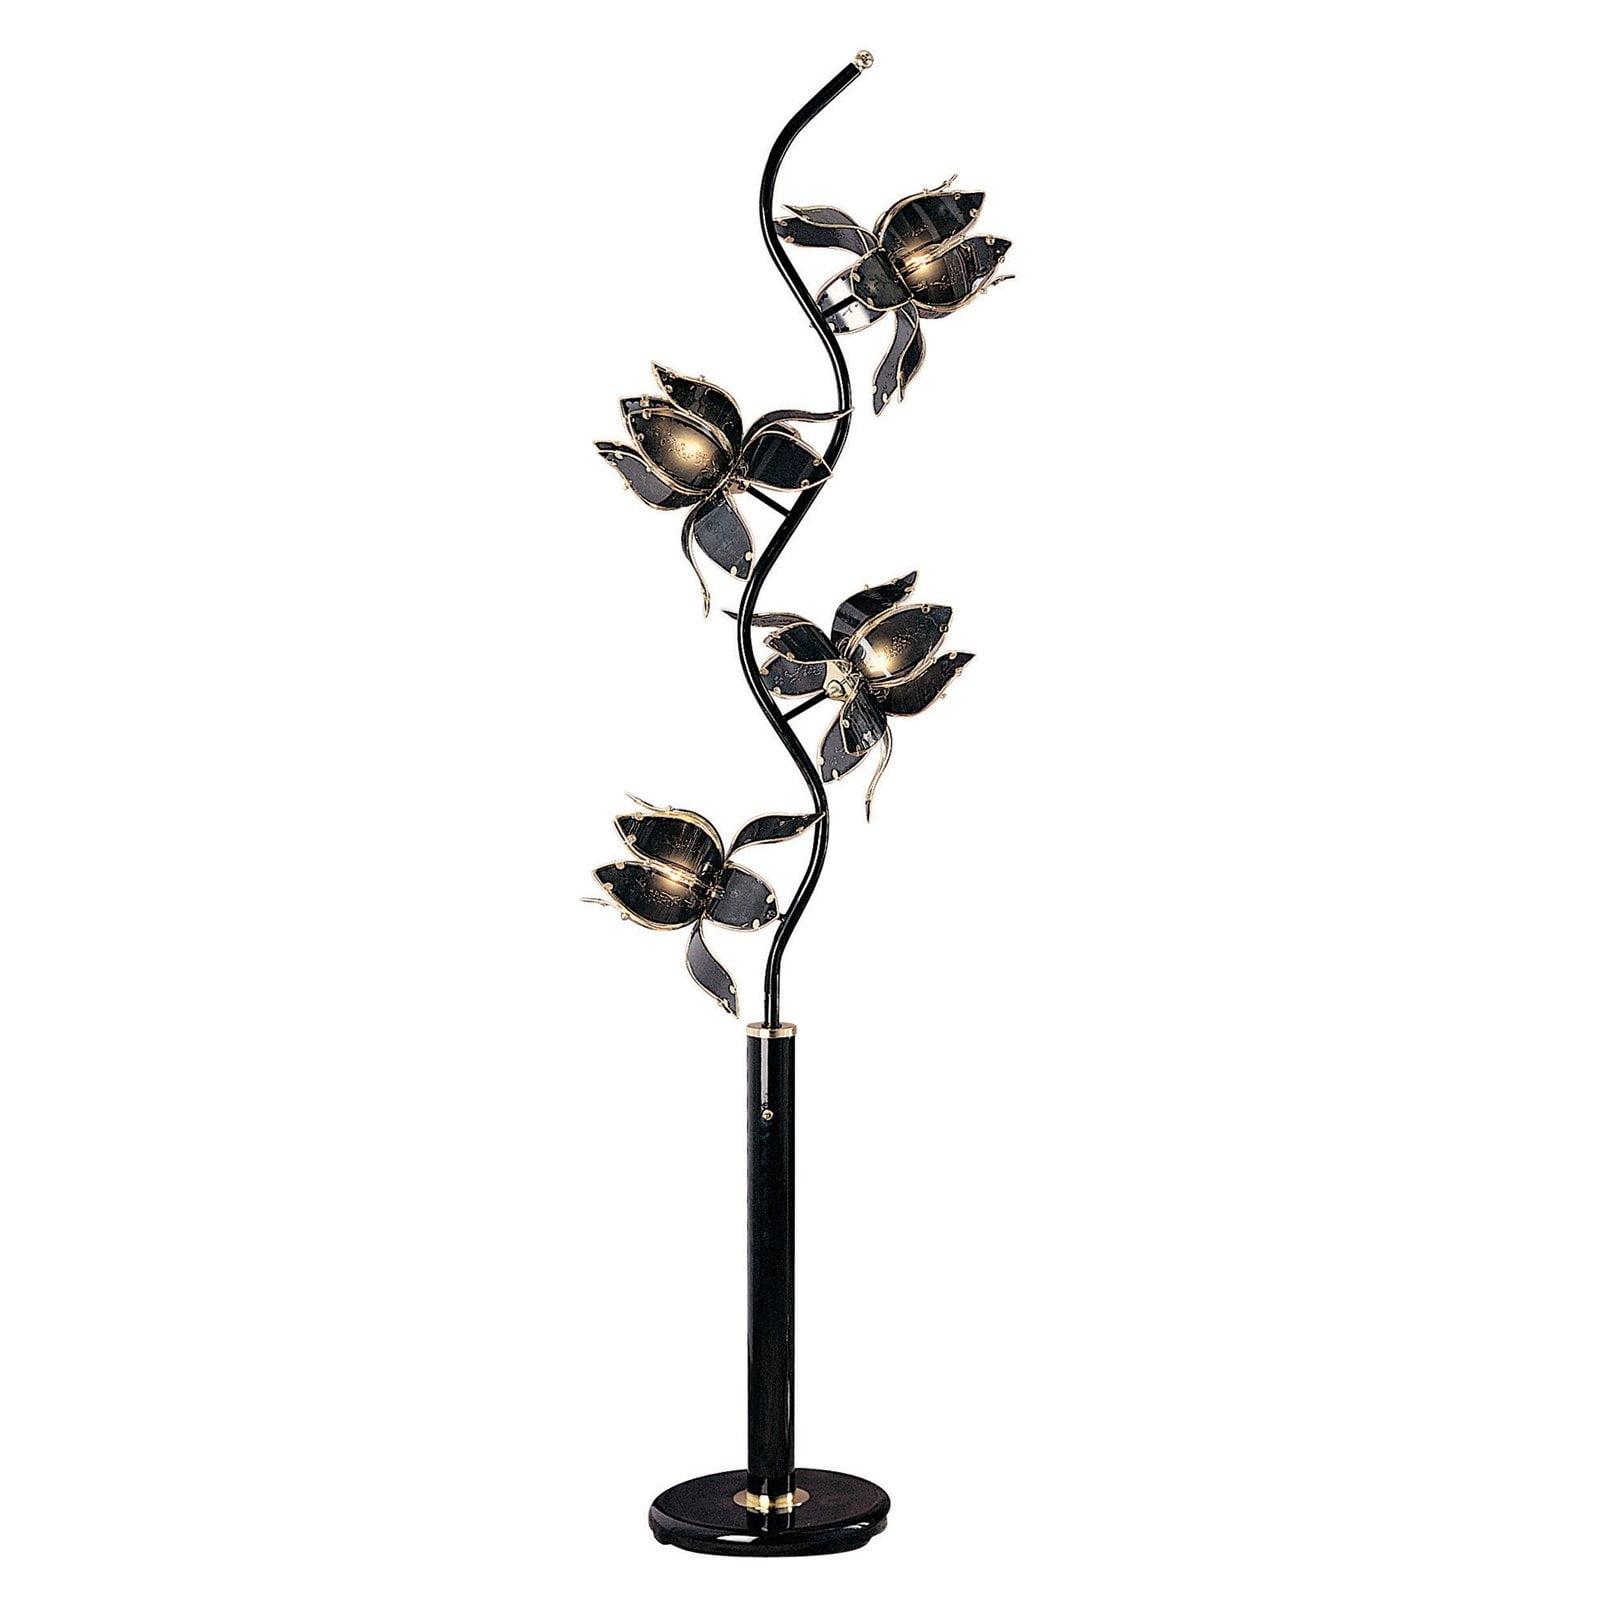 Elegant Black Metal Floor Lamp with Contemporary Design